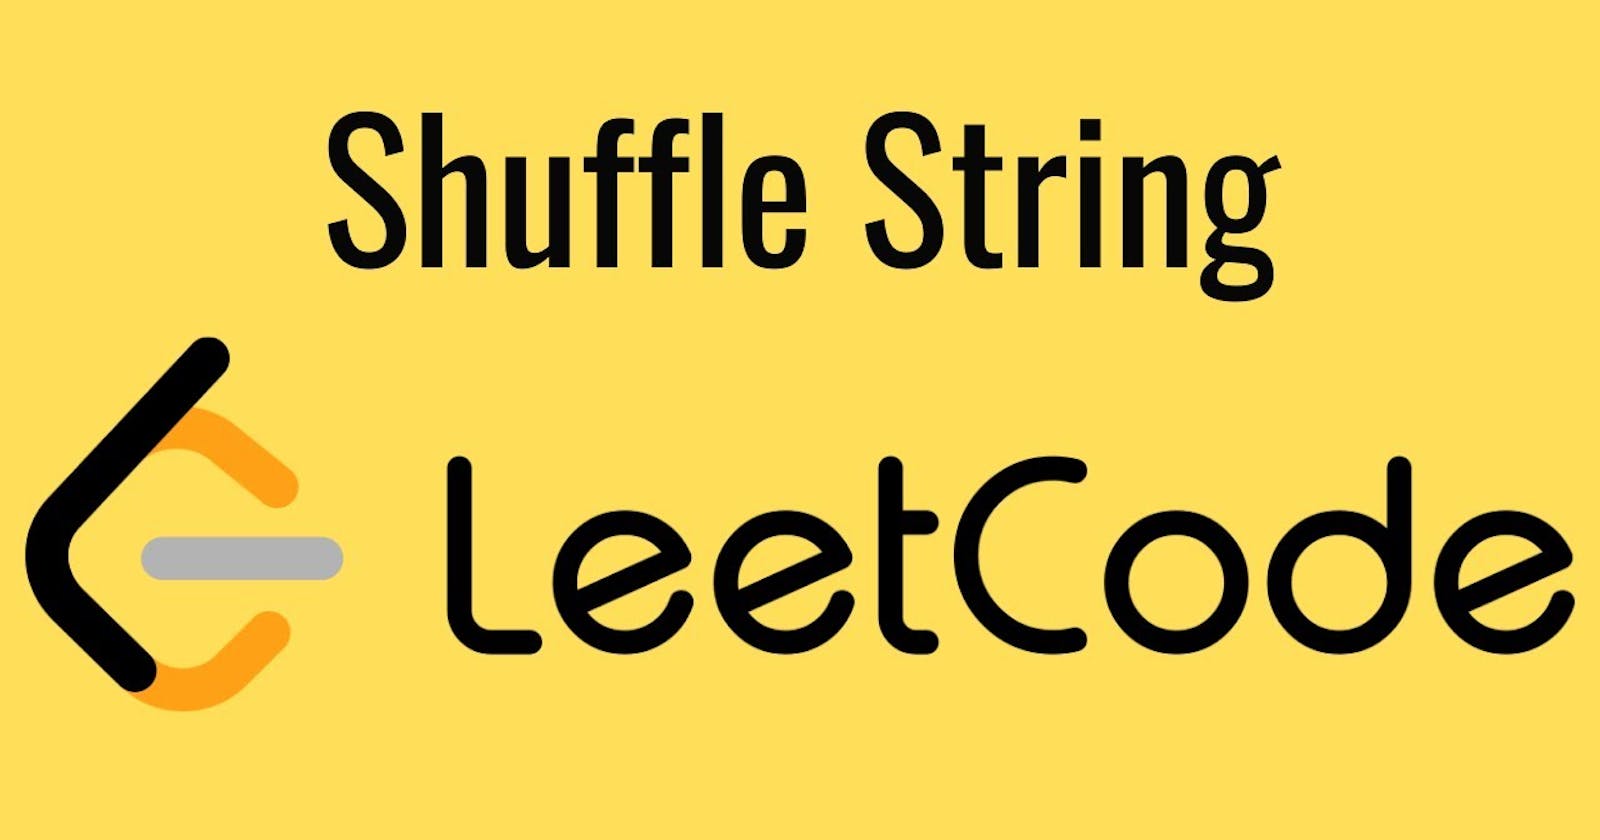 1528. Shuffle String